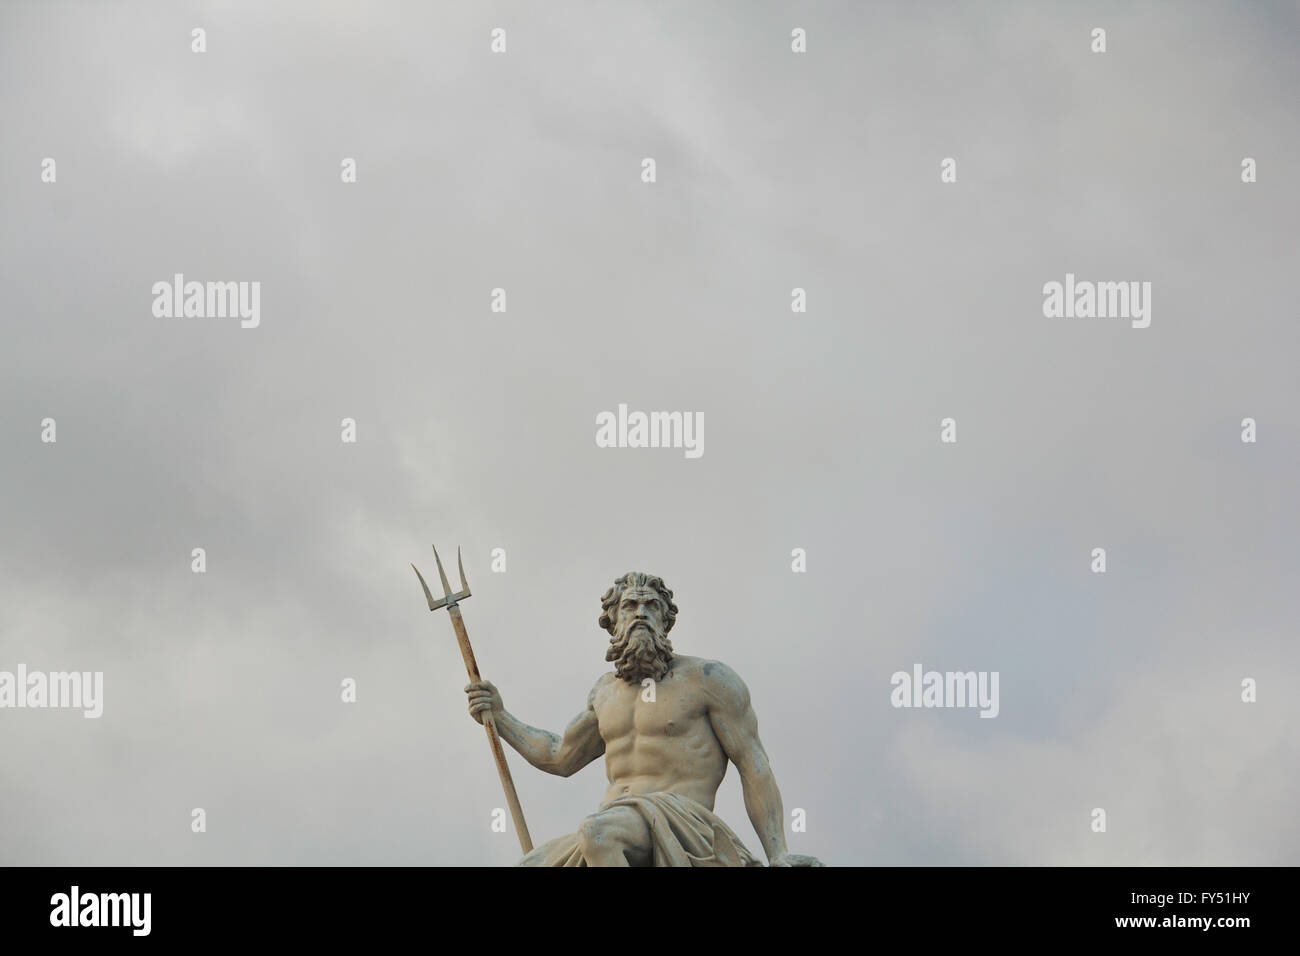 Statue of Neptune in Copenhagen, Denmark, against an overcast sky. Stock Photo